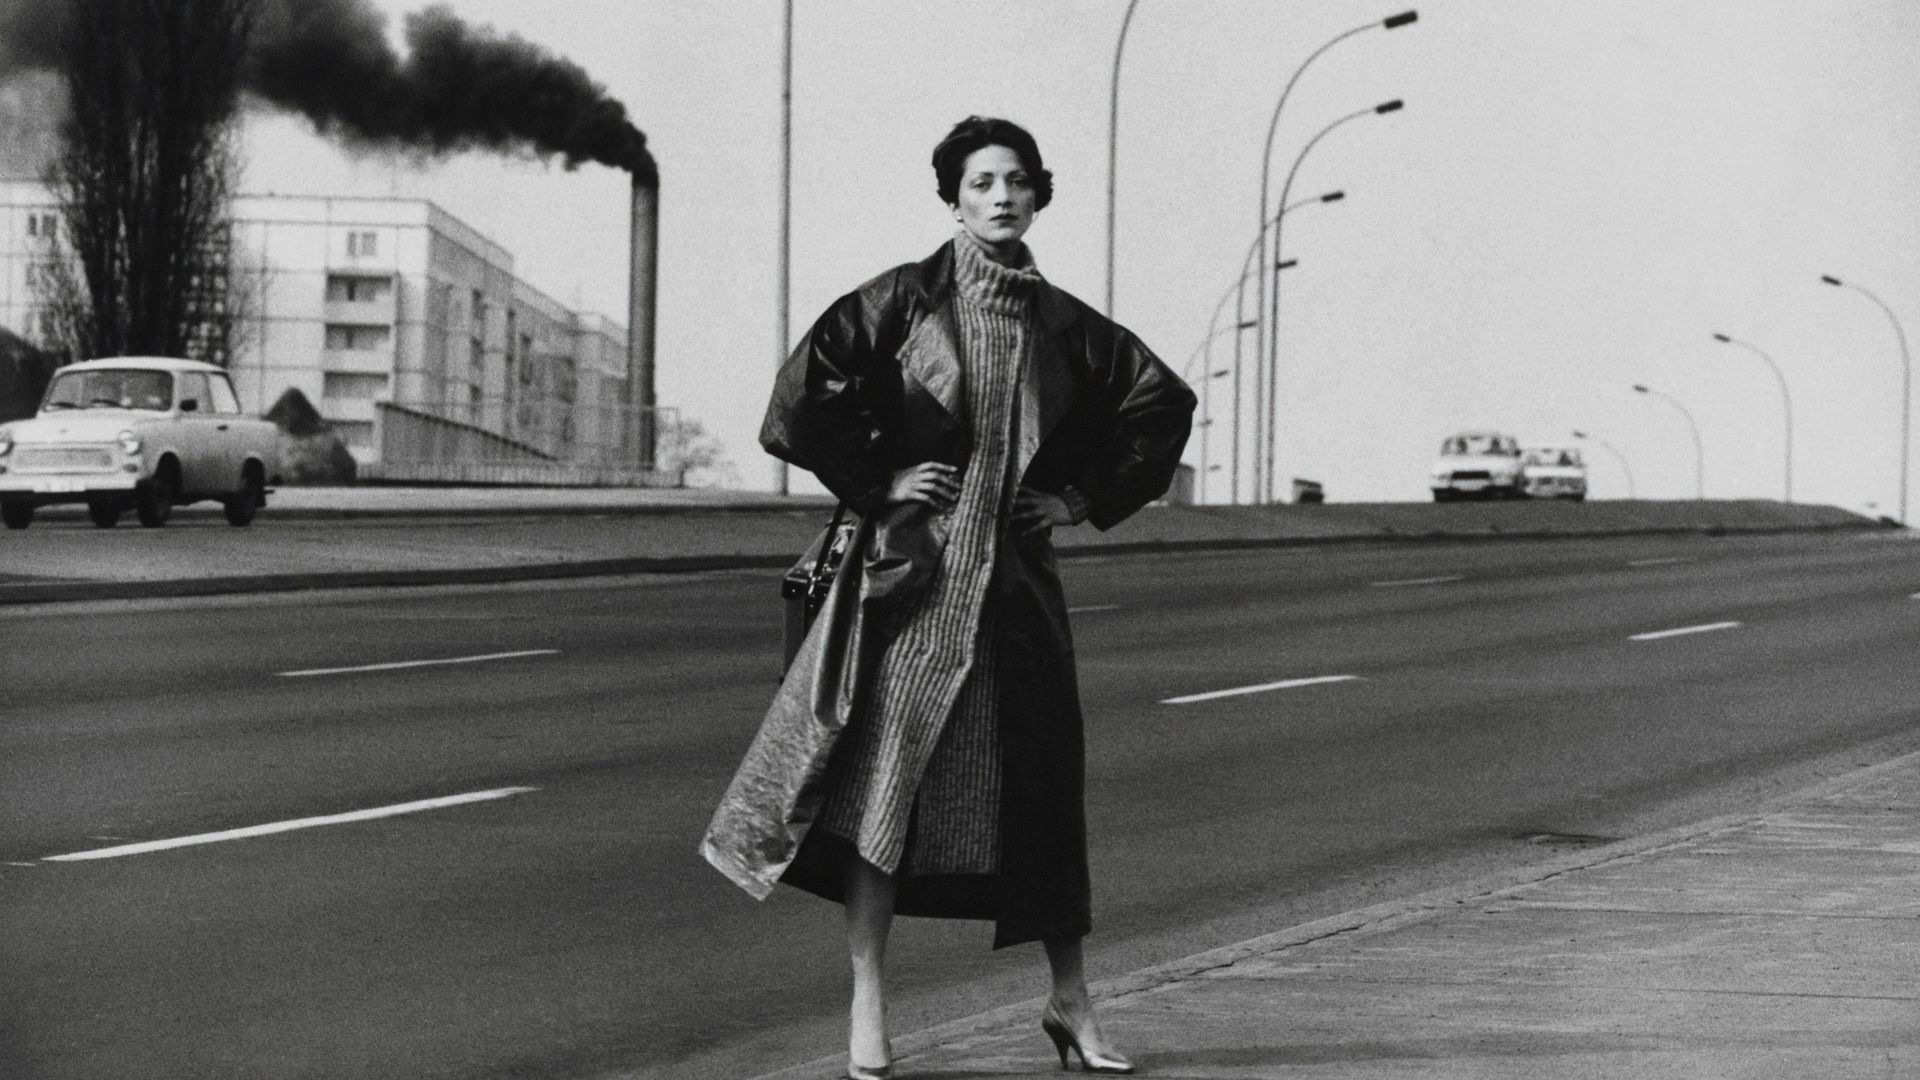 Schwarz-Fotografie einer Frau mit Mantel, die die Hände auf die Hüften gestützt, auf einer mehrspurigen Straße steht. Im Hintergrund Straßenlaternen und ein Turm aus dem dunkler Rauch aufsteigt.